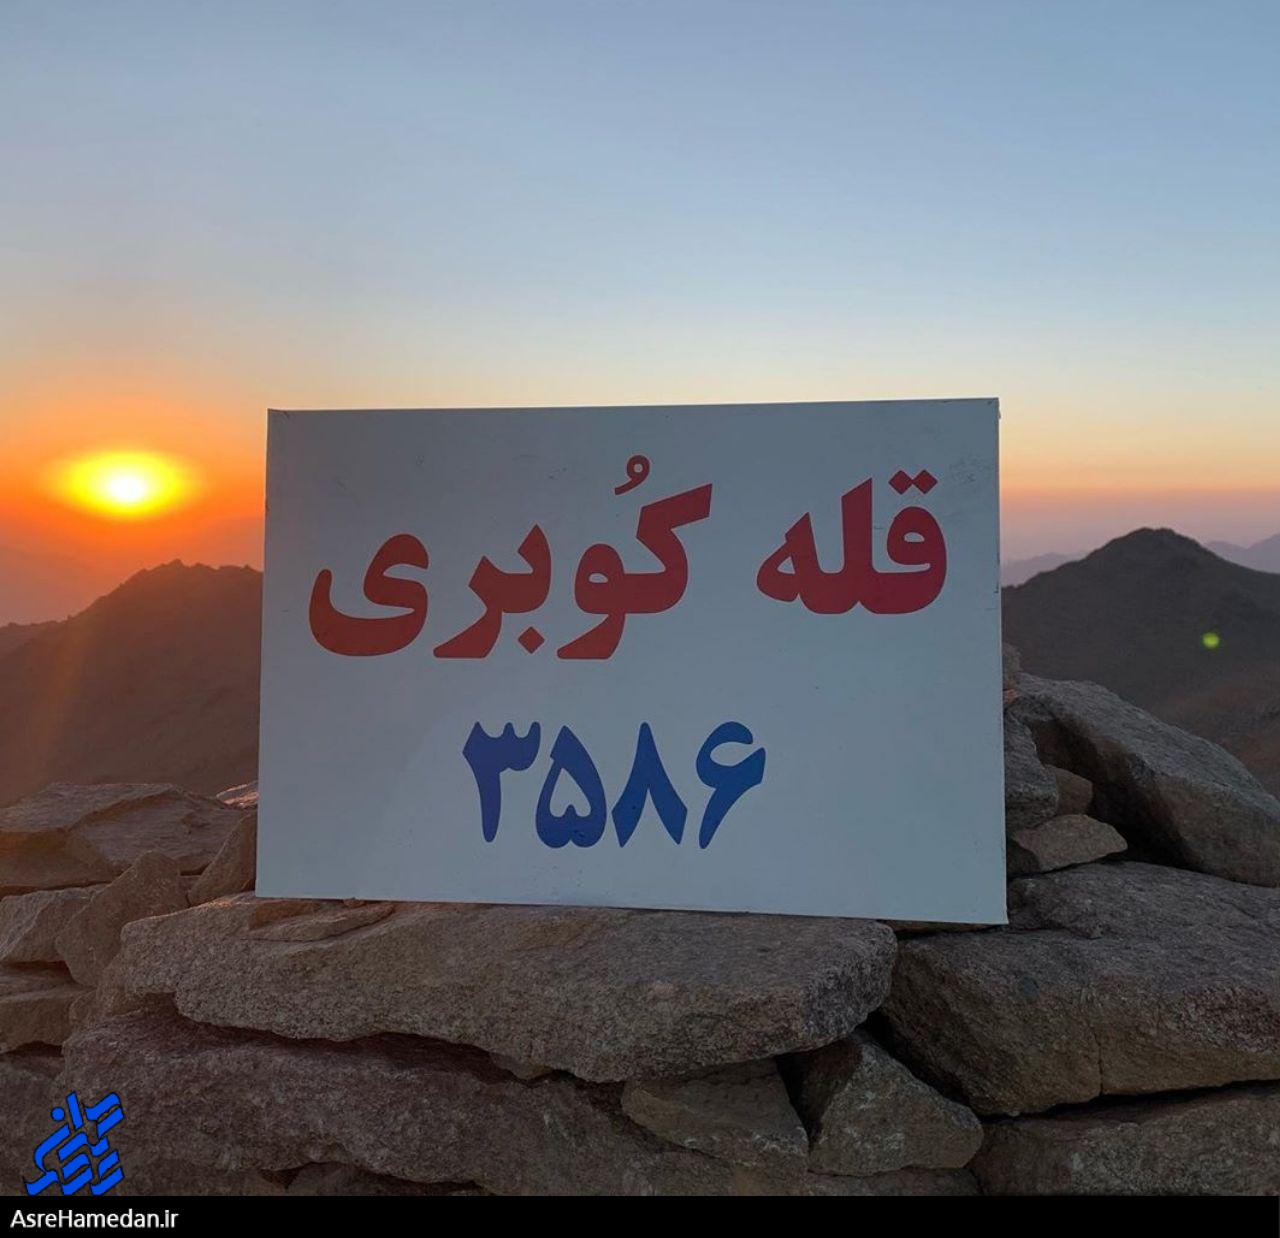 کوبُره در تویسرکان به عنوان بام جدید استان همدان ثبت شد